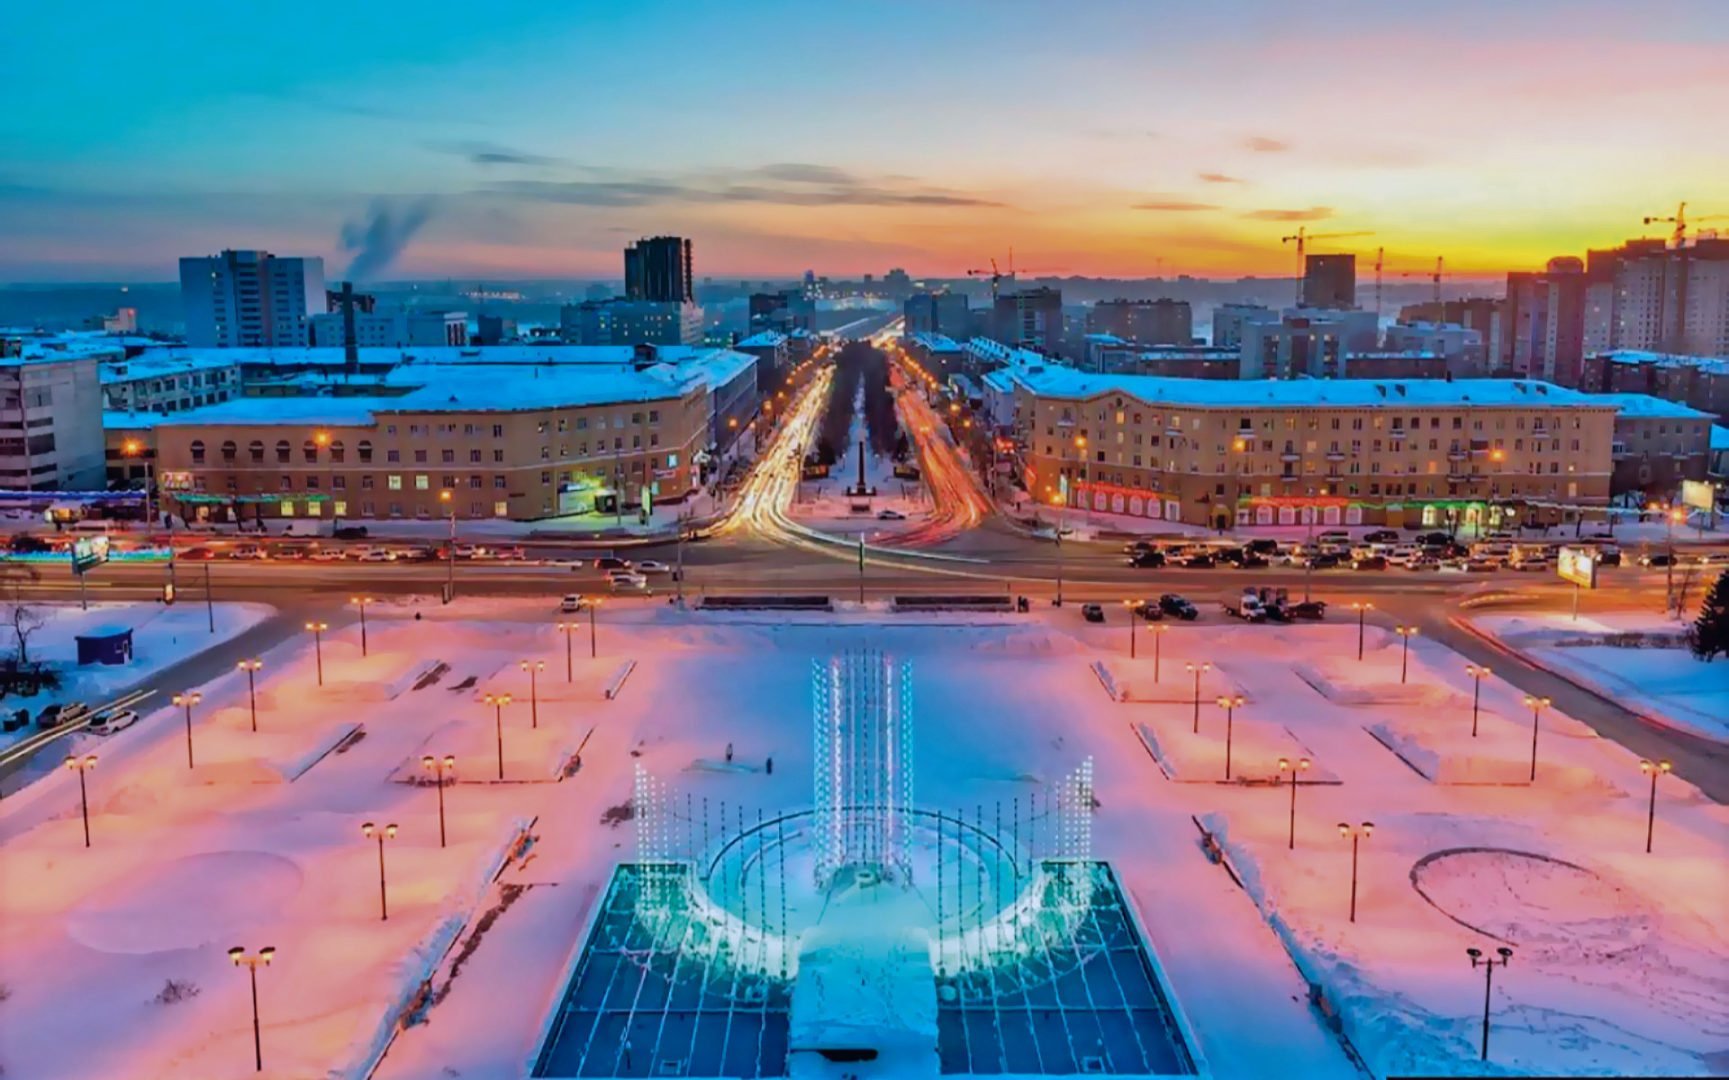 Интересные города сибири. Площадь Пименова Новосибирск. ГПНТБ Новосибирск зимой. Новосибирск столица Сибири. Площадь Пименова Новосибирск зима.